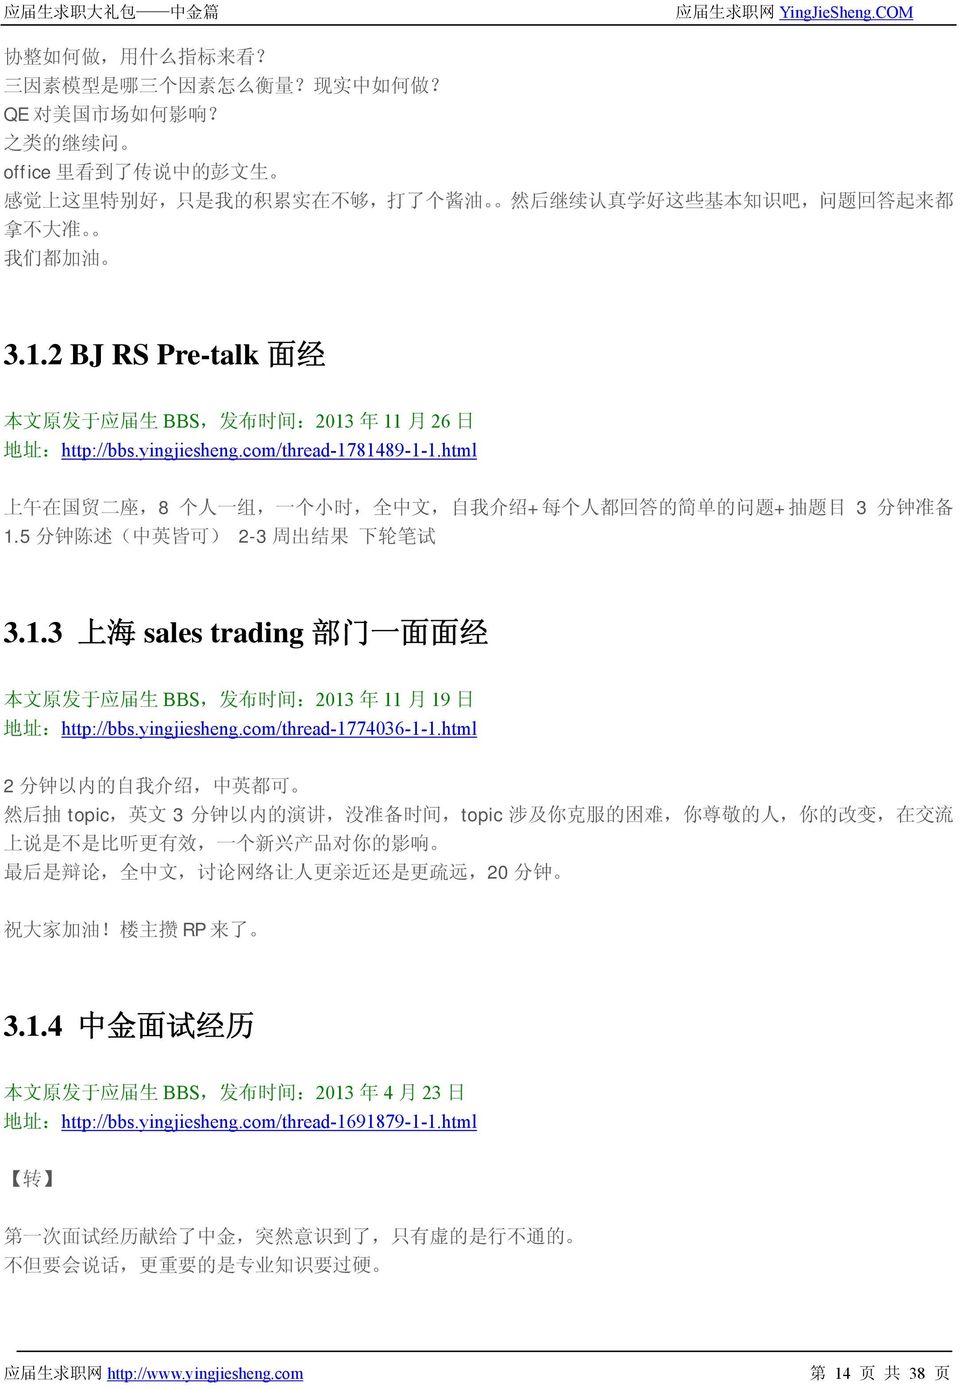 2 BJ RS Pre-talk 面 经 本 文 原 发 于 应 届 生 BBS, 发 布 时 间 :2013 年 11 月 26 日 地 址 :http://bbs.yingjiesheng.com/thread-1781489-1-1.